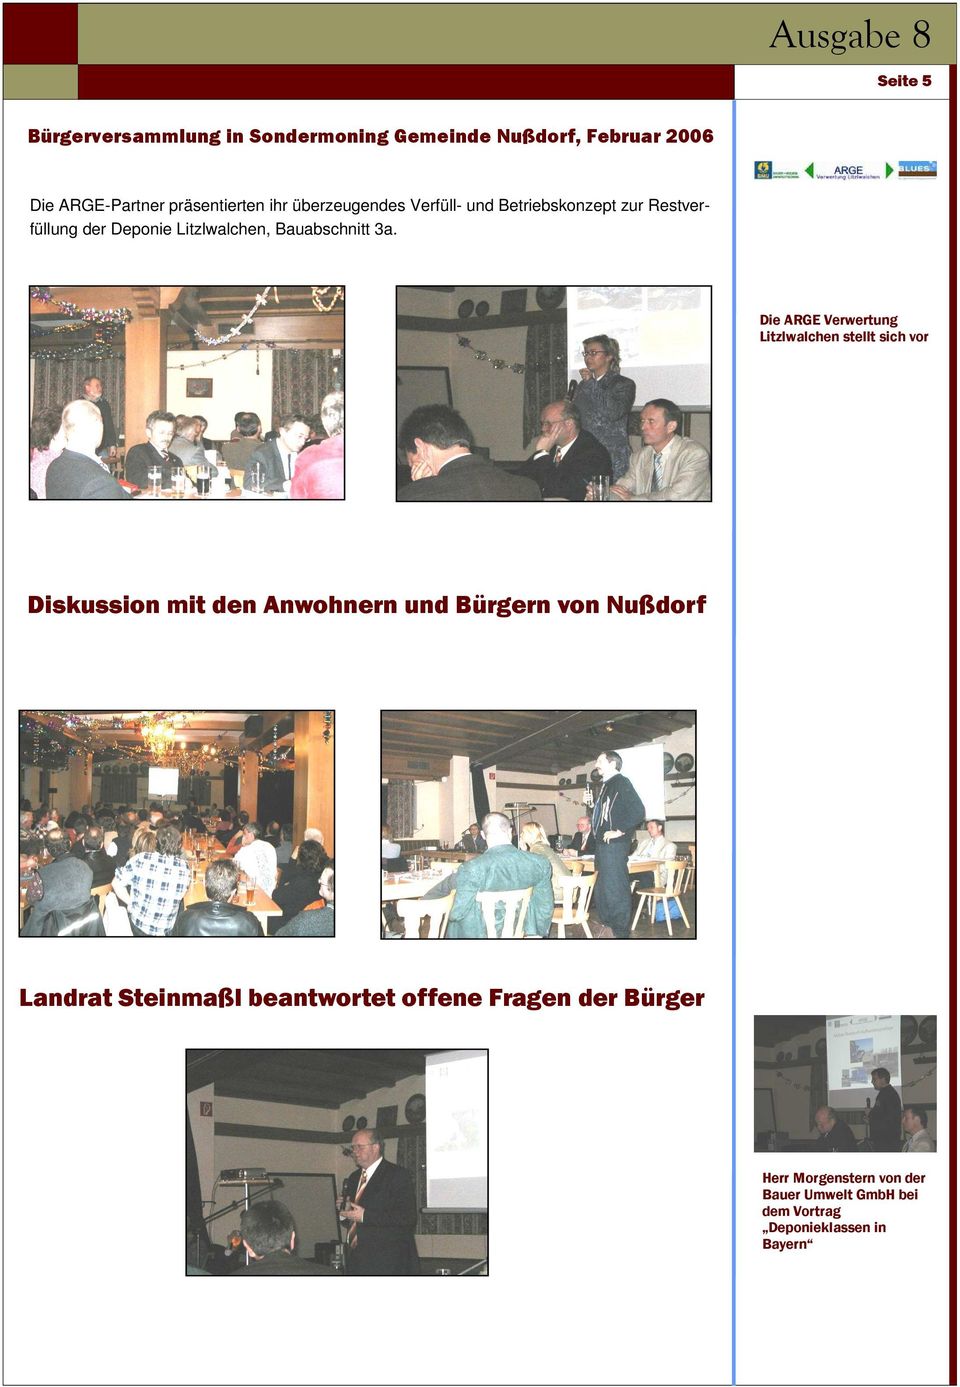 Die ARGE Verwertung Litzlwalchen stellt sich vor Diskussion mit den Anwohnern und Bürgern von Nußdorf Landrat